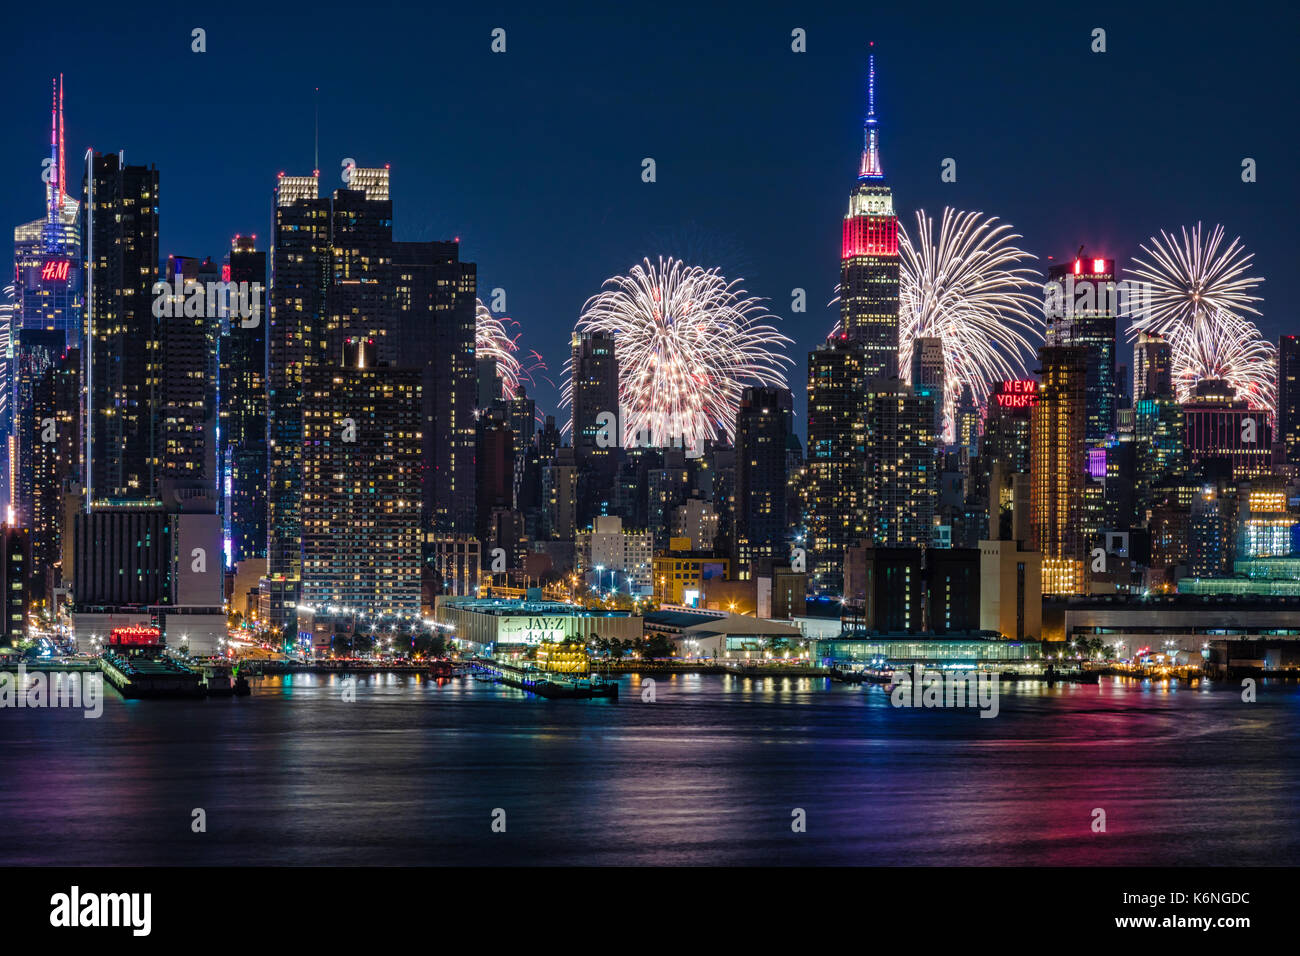 NYC 4. Juli Feuerwerk Feier - Skyline von New York City mit dem Macy's Spektakuläre 4. Juli Feuerwerk Feier zeigen als Kulisse für Midtown Manhattan. Stockfoto